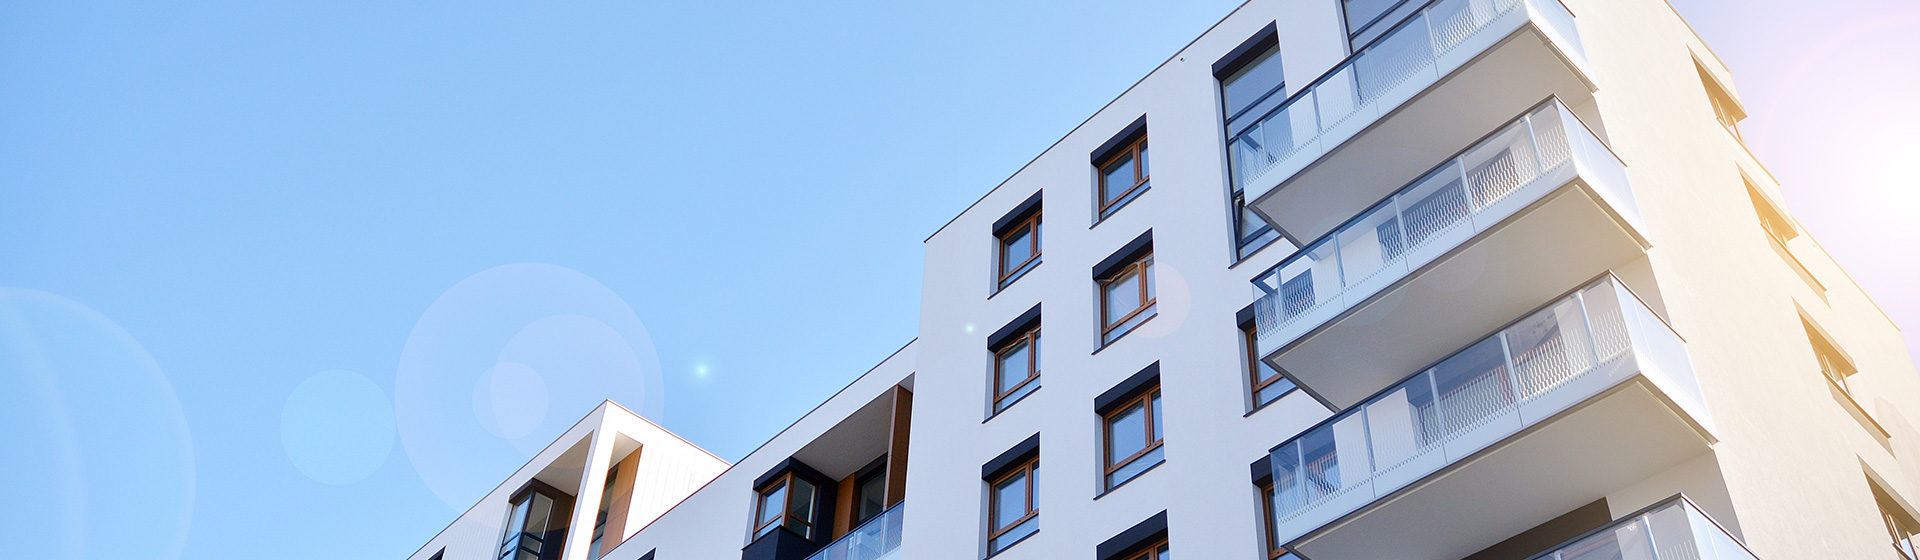 Moderne Mehrfamilienhäuser mit Balkonen unter blauem Himmel – Datenschutz inveni consulting